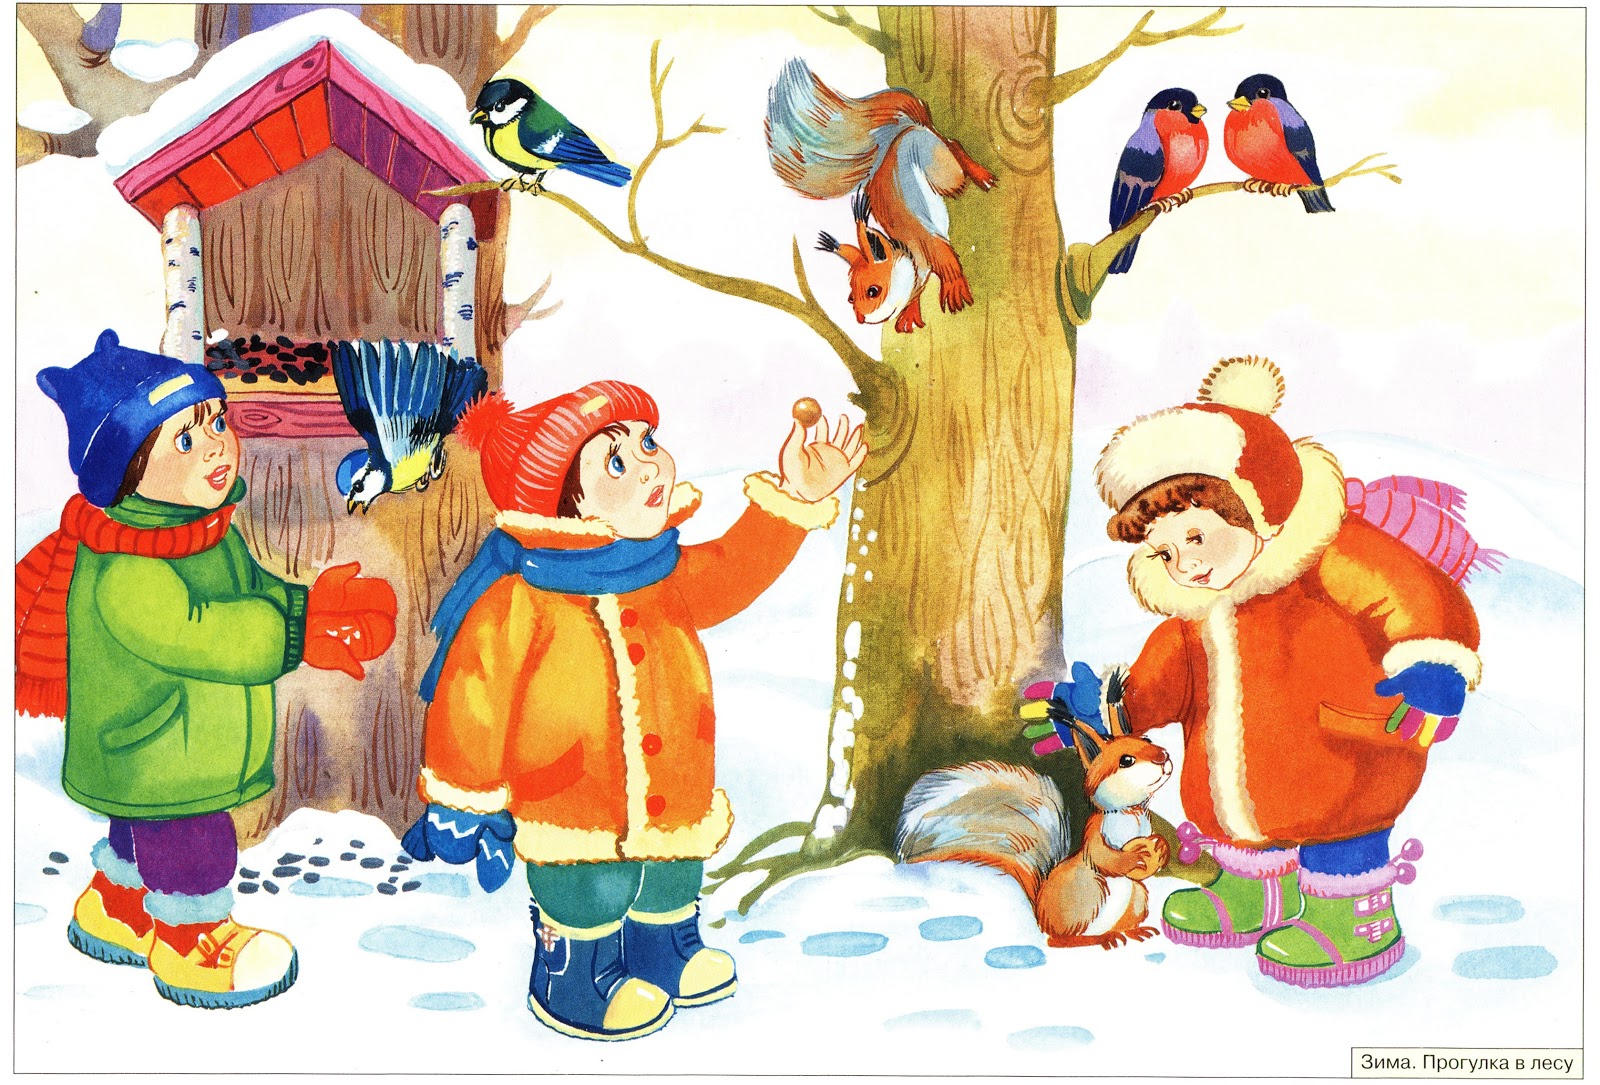 Сюжетные занятия в подготовительной группе. Зима для детей дошкольного возраста. О зиме детям дошкольникам. Иллюстрации зима для детского сада. Зима для детей в детском саду.